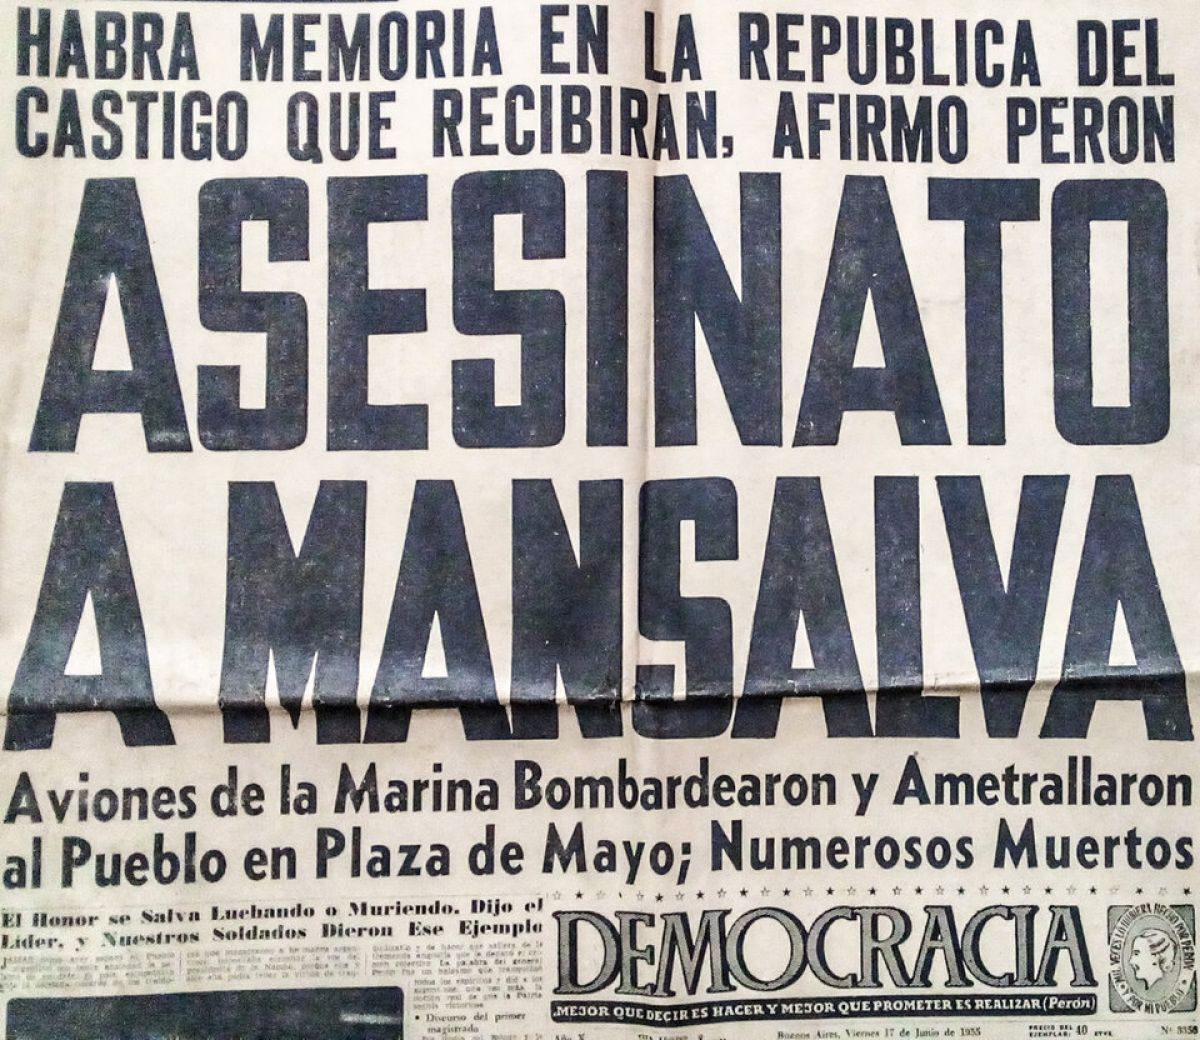 El mayor acto terrorista de la historia argentina | VA CON FIRMA. Un plus sobre la información.